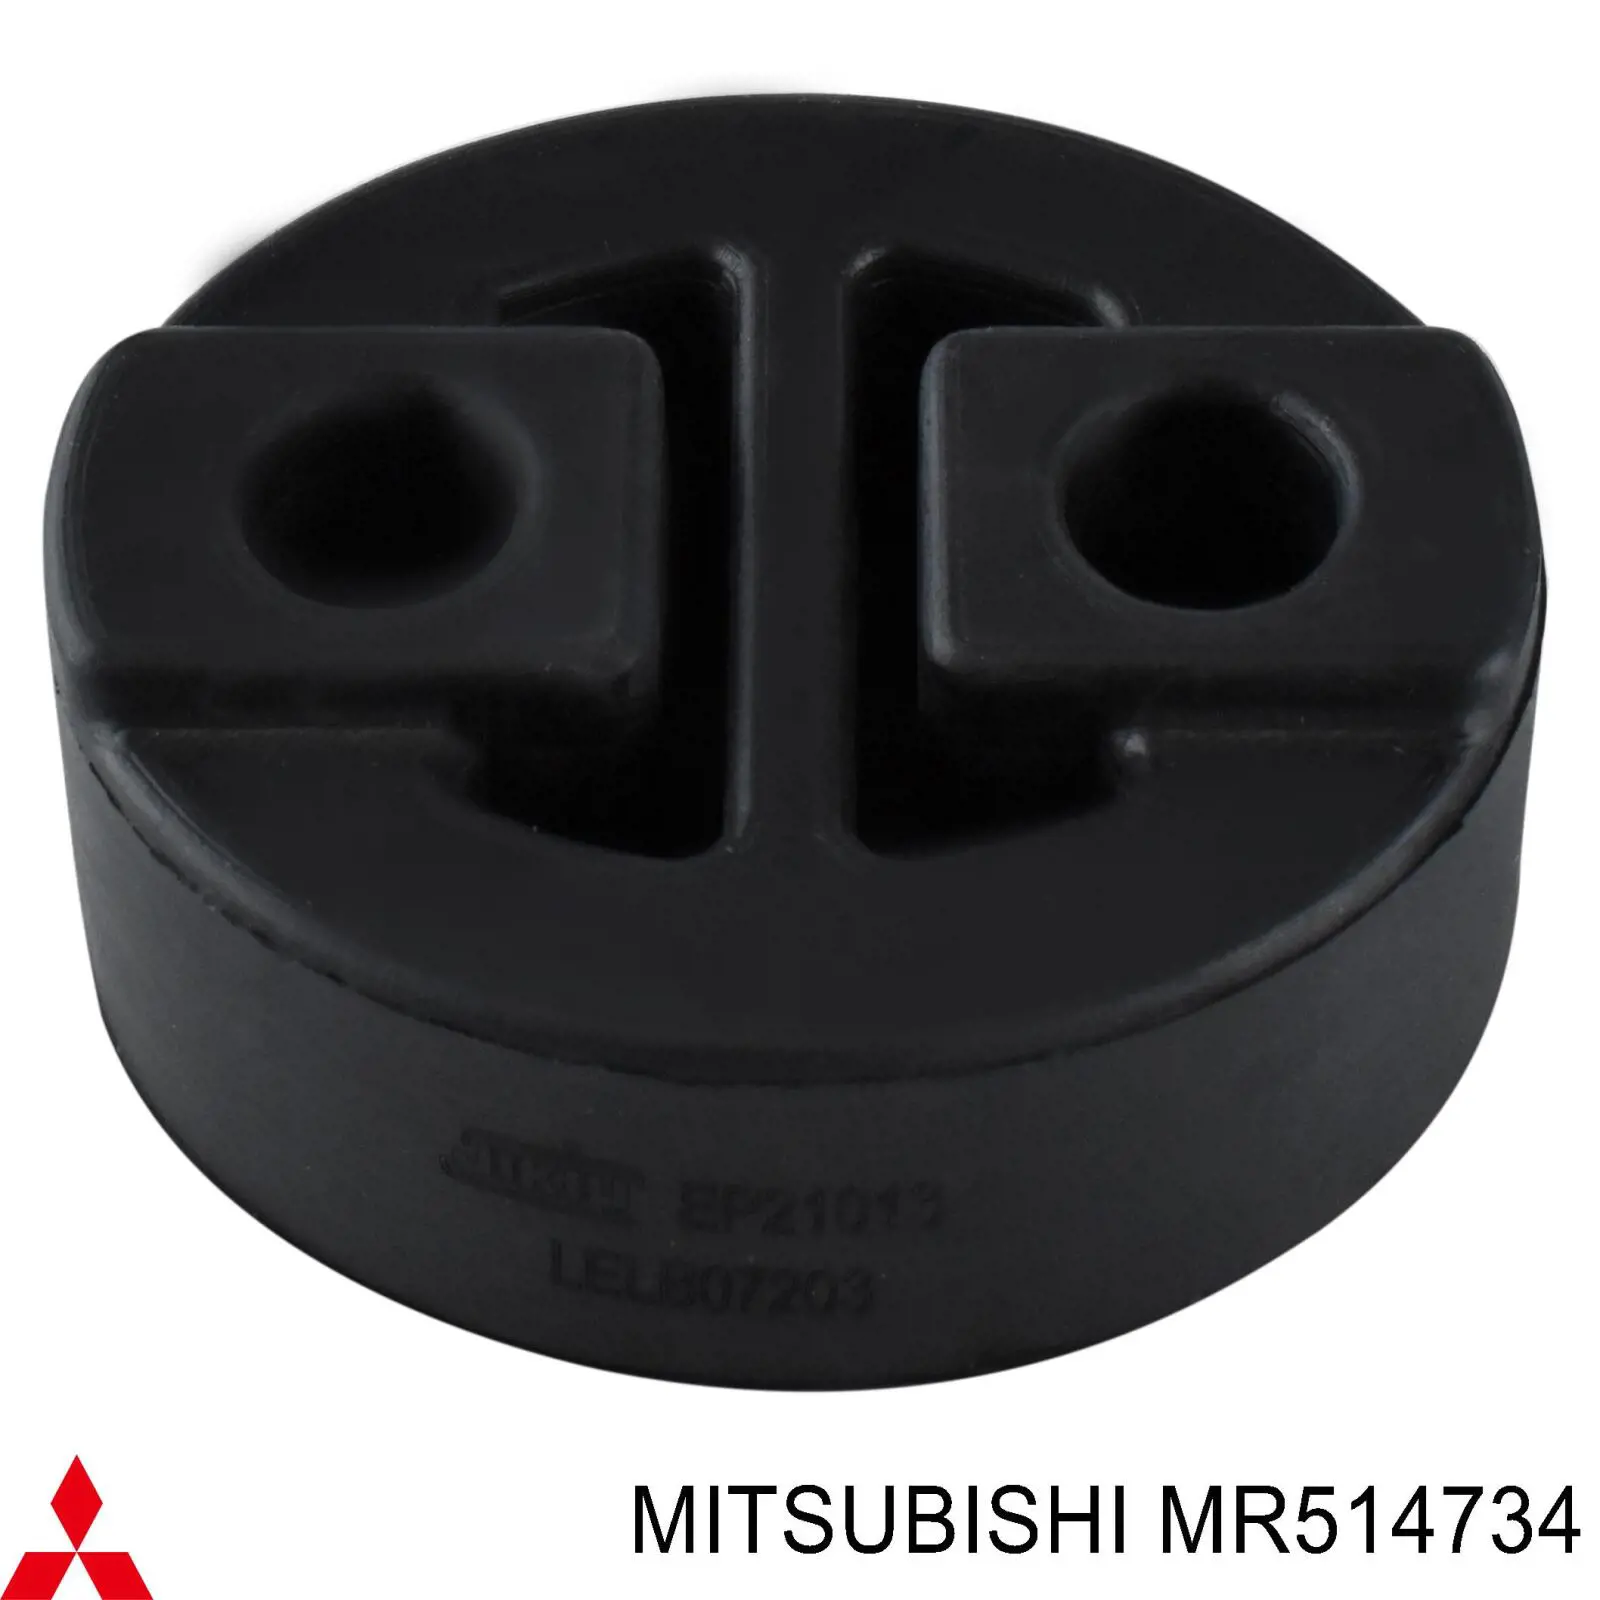 MR514734 Mitsubishi soporte, silenciador